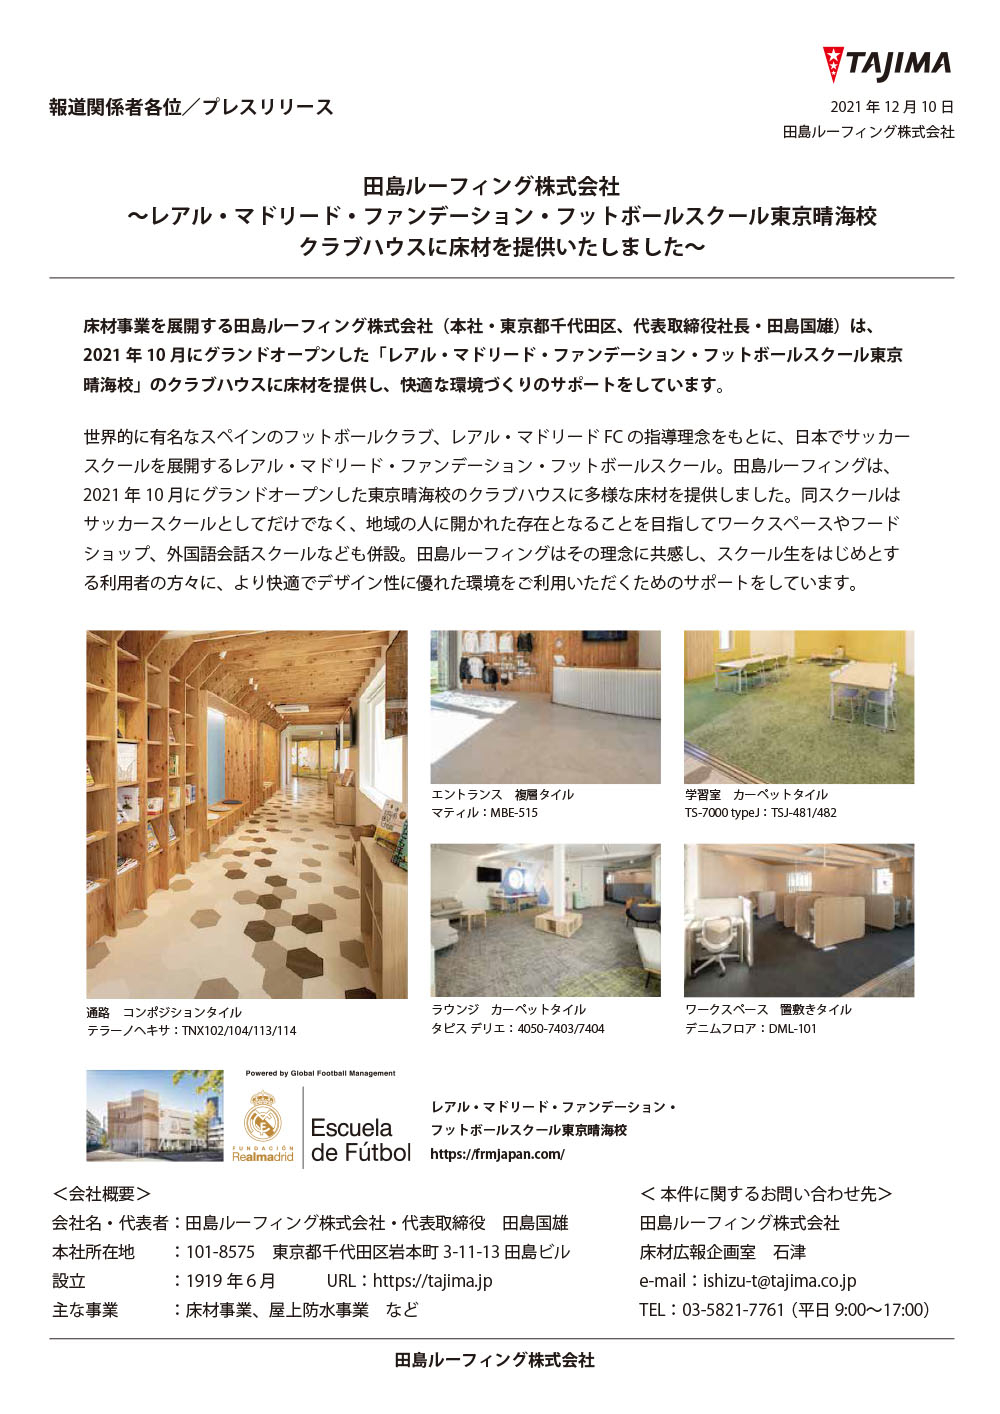 レアル・マドリード・ファンデーション・フットボールスクール東京晴海校クラブハウスに床材を提供いたしました